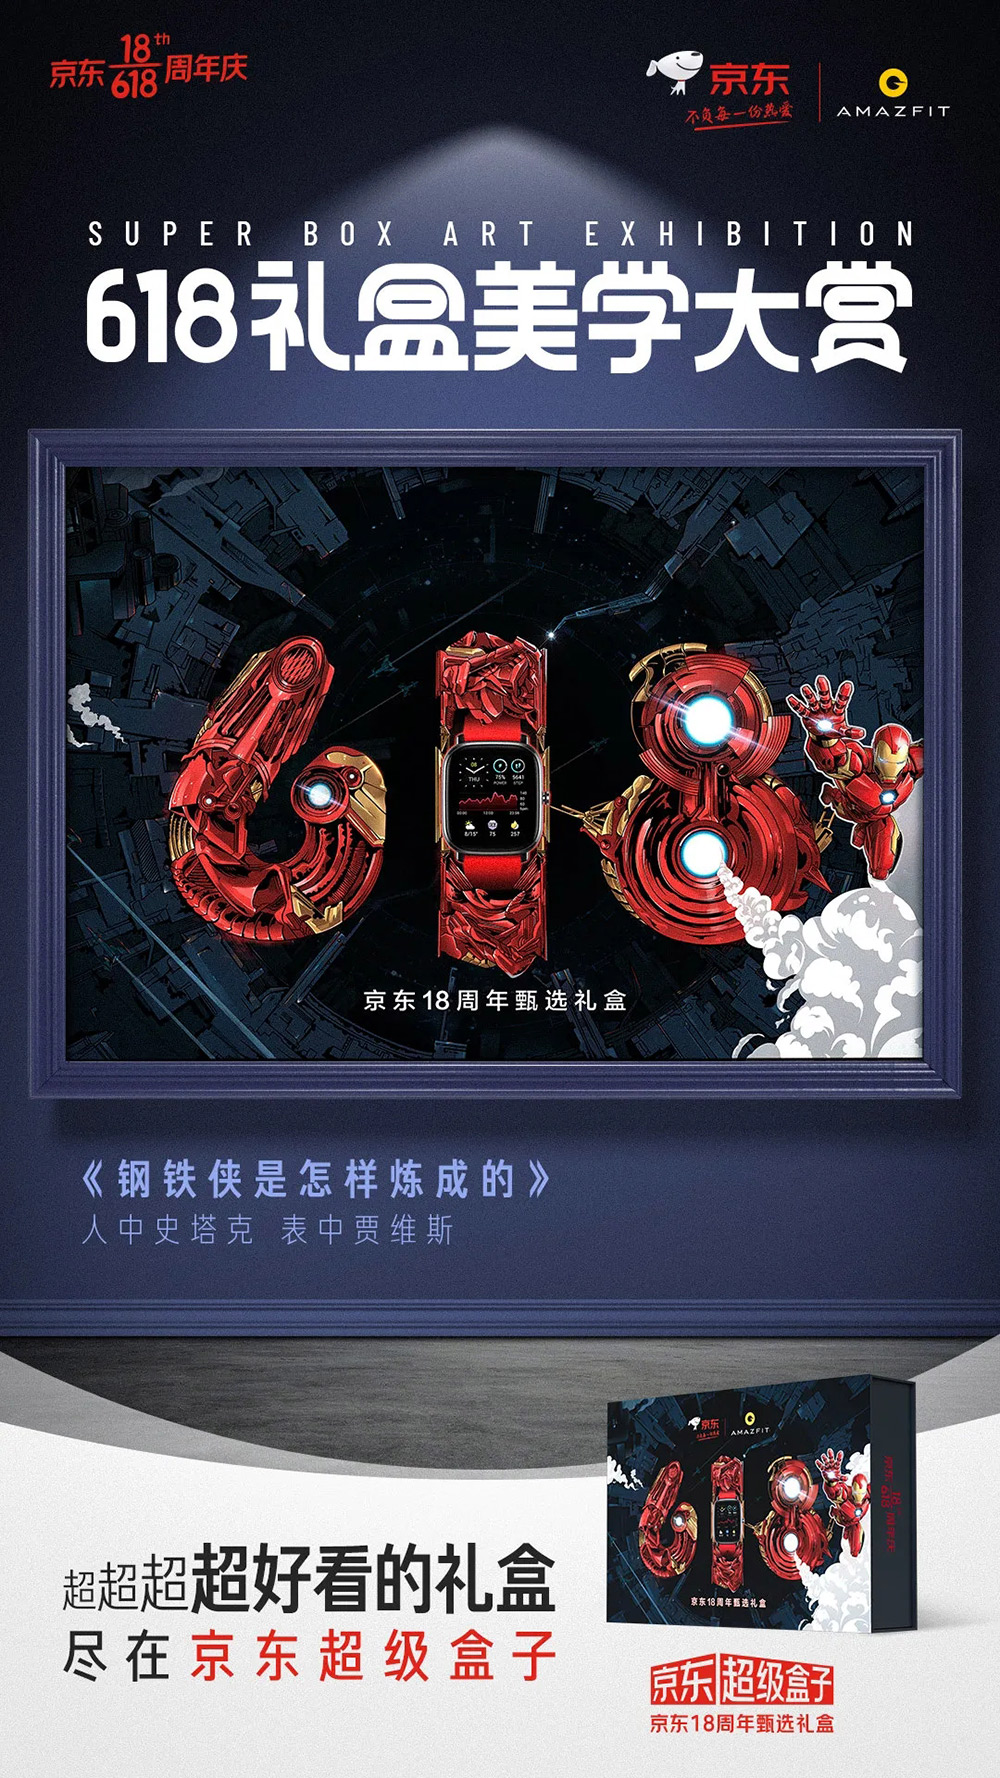 京东联合各大品牌推出的「618礼盒美学大赏」系列海报!